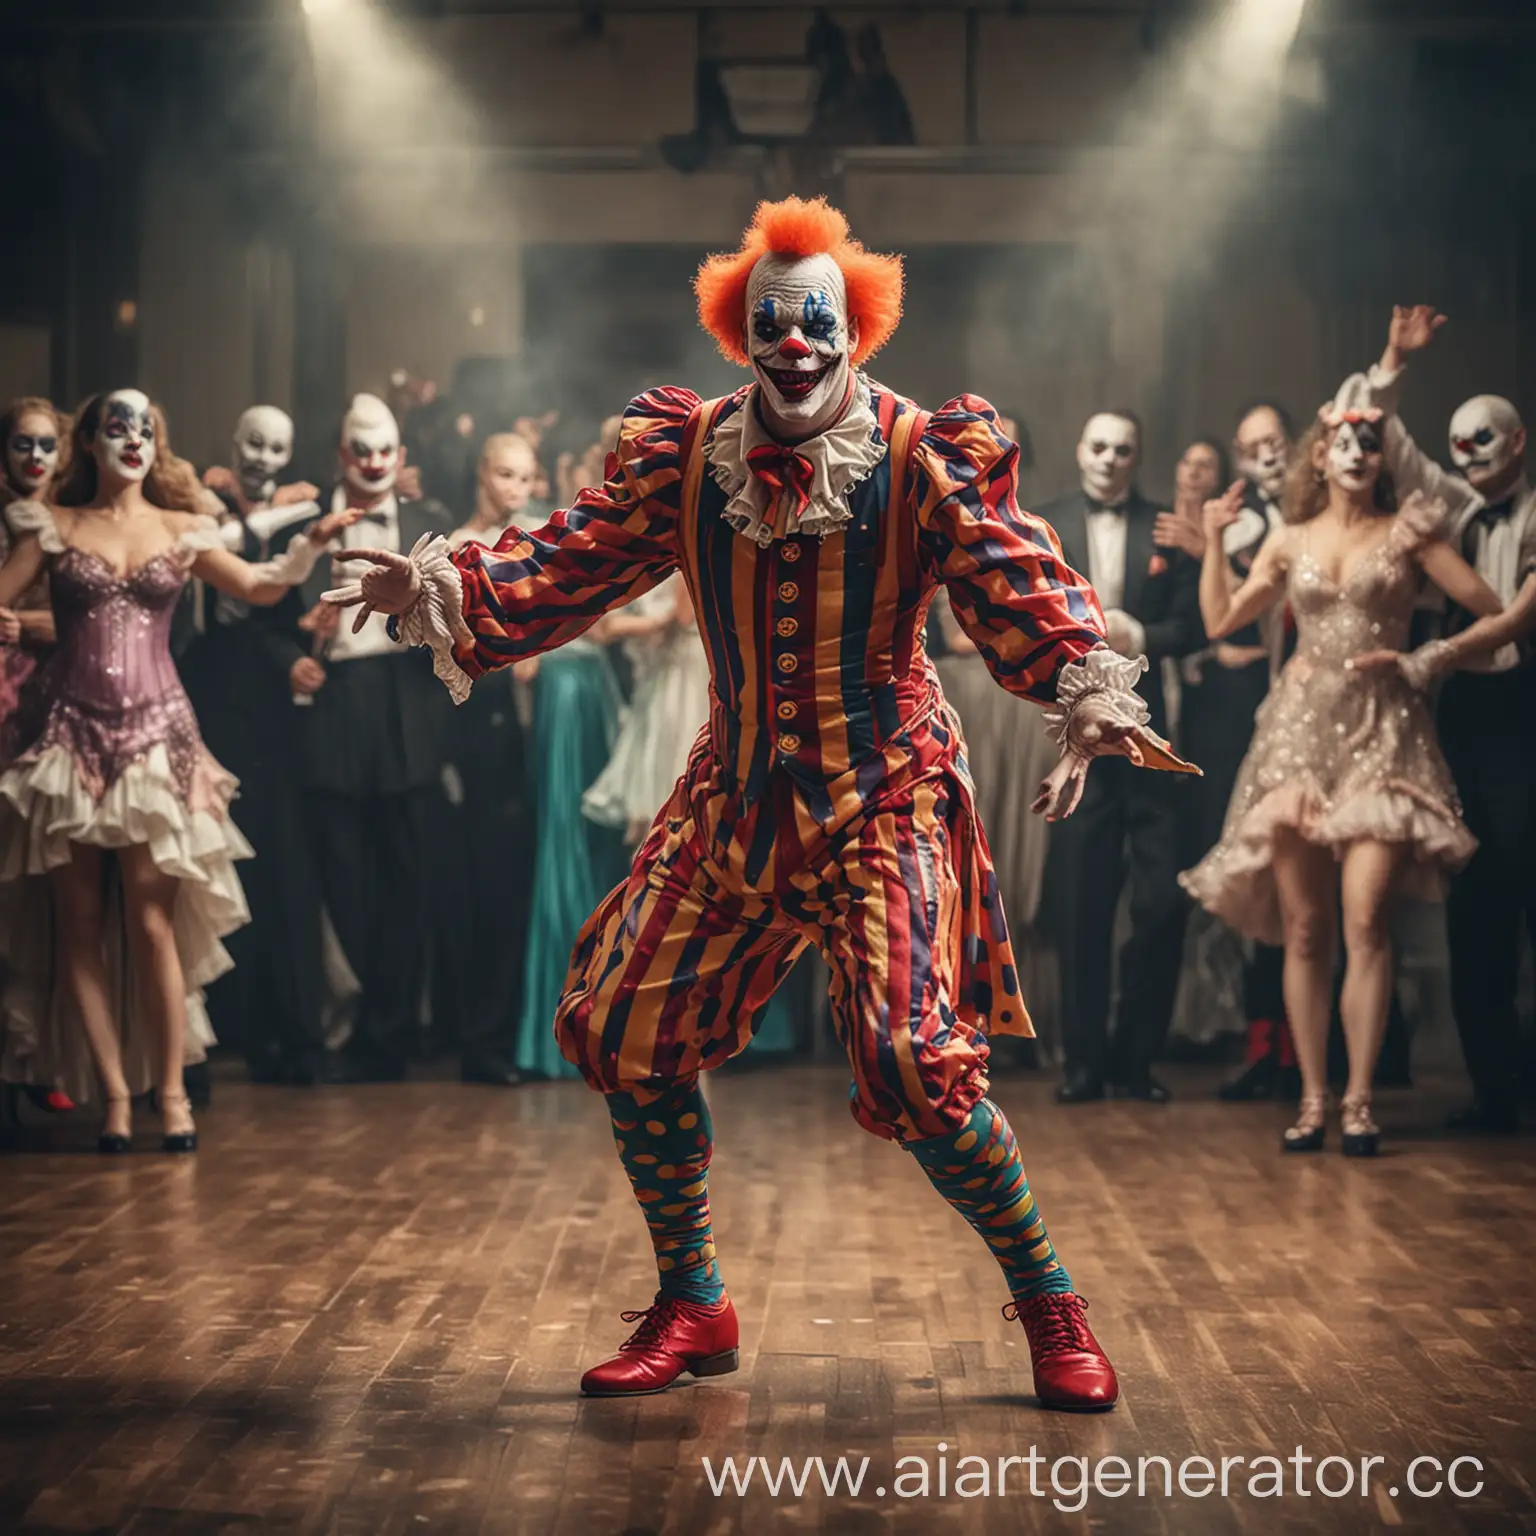 Злой клоун танцует бальные танцы на сореванованиии